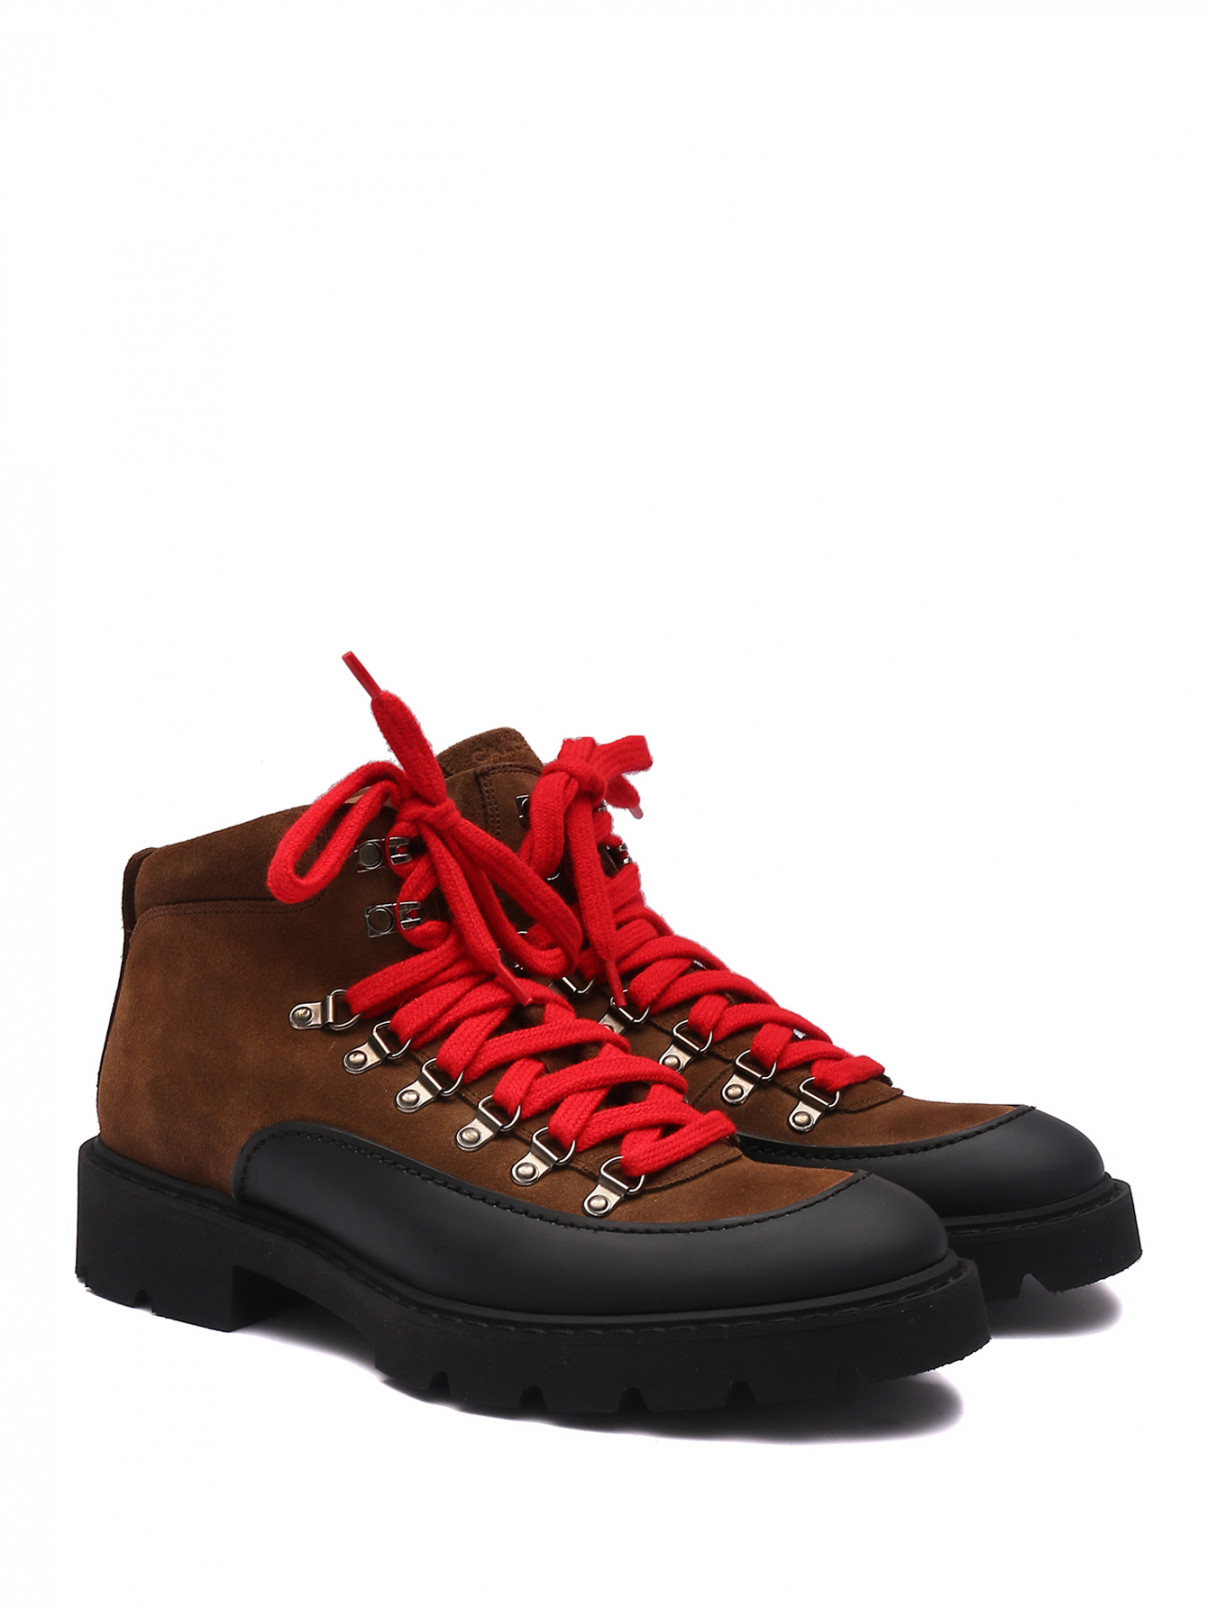 Ботинки из замши с контрастной шнуровкой Calce  –  Общий вид  – Цвет:  Коричневый